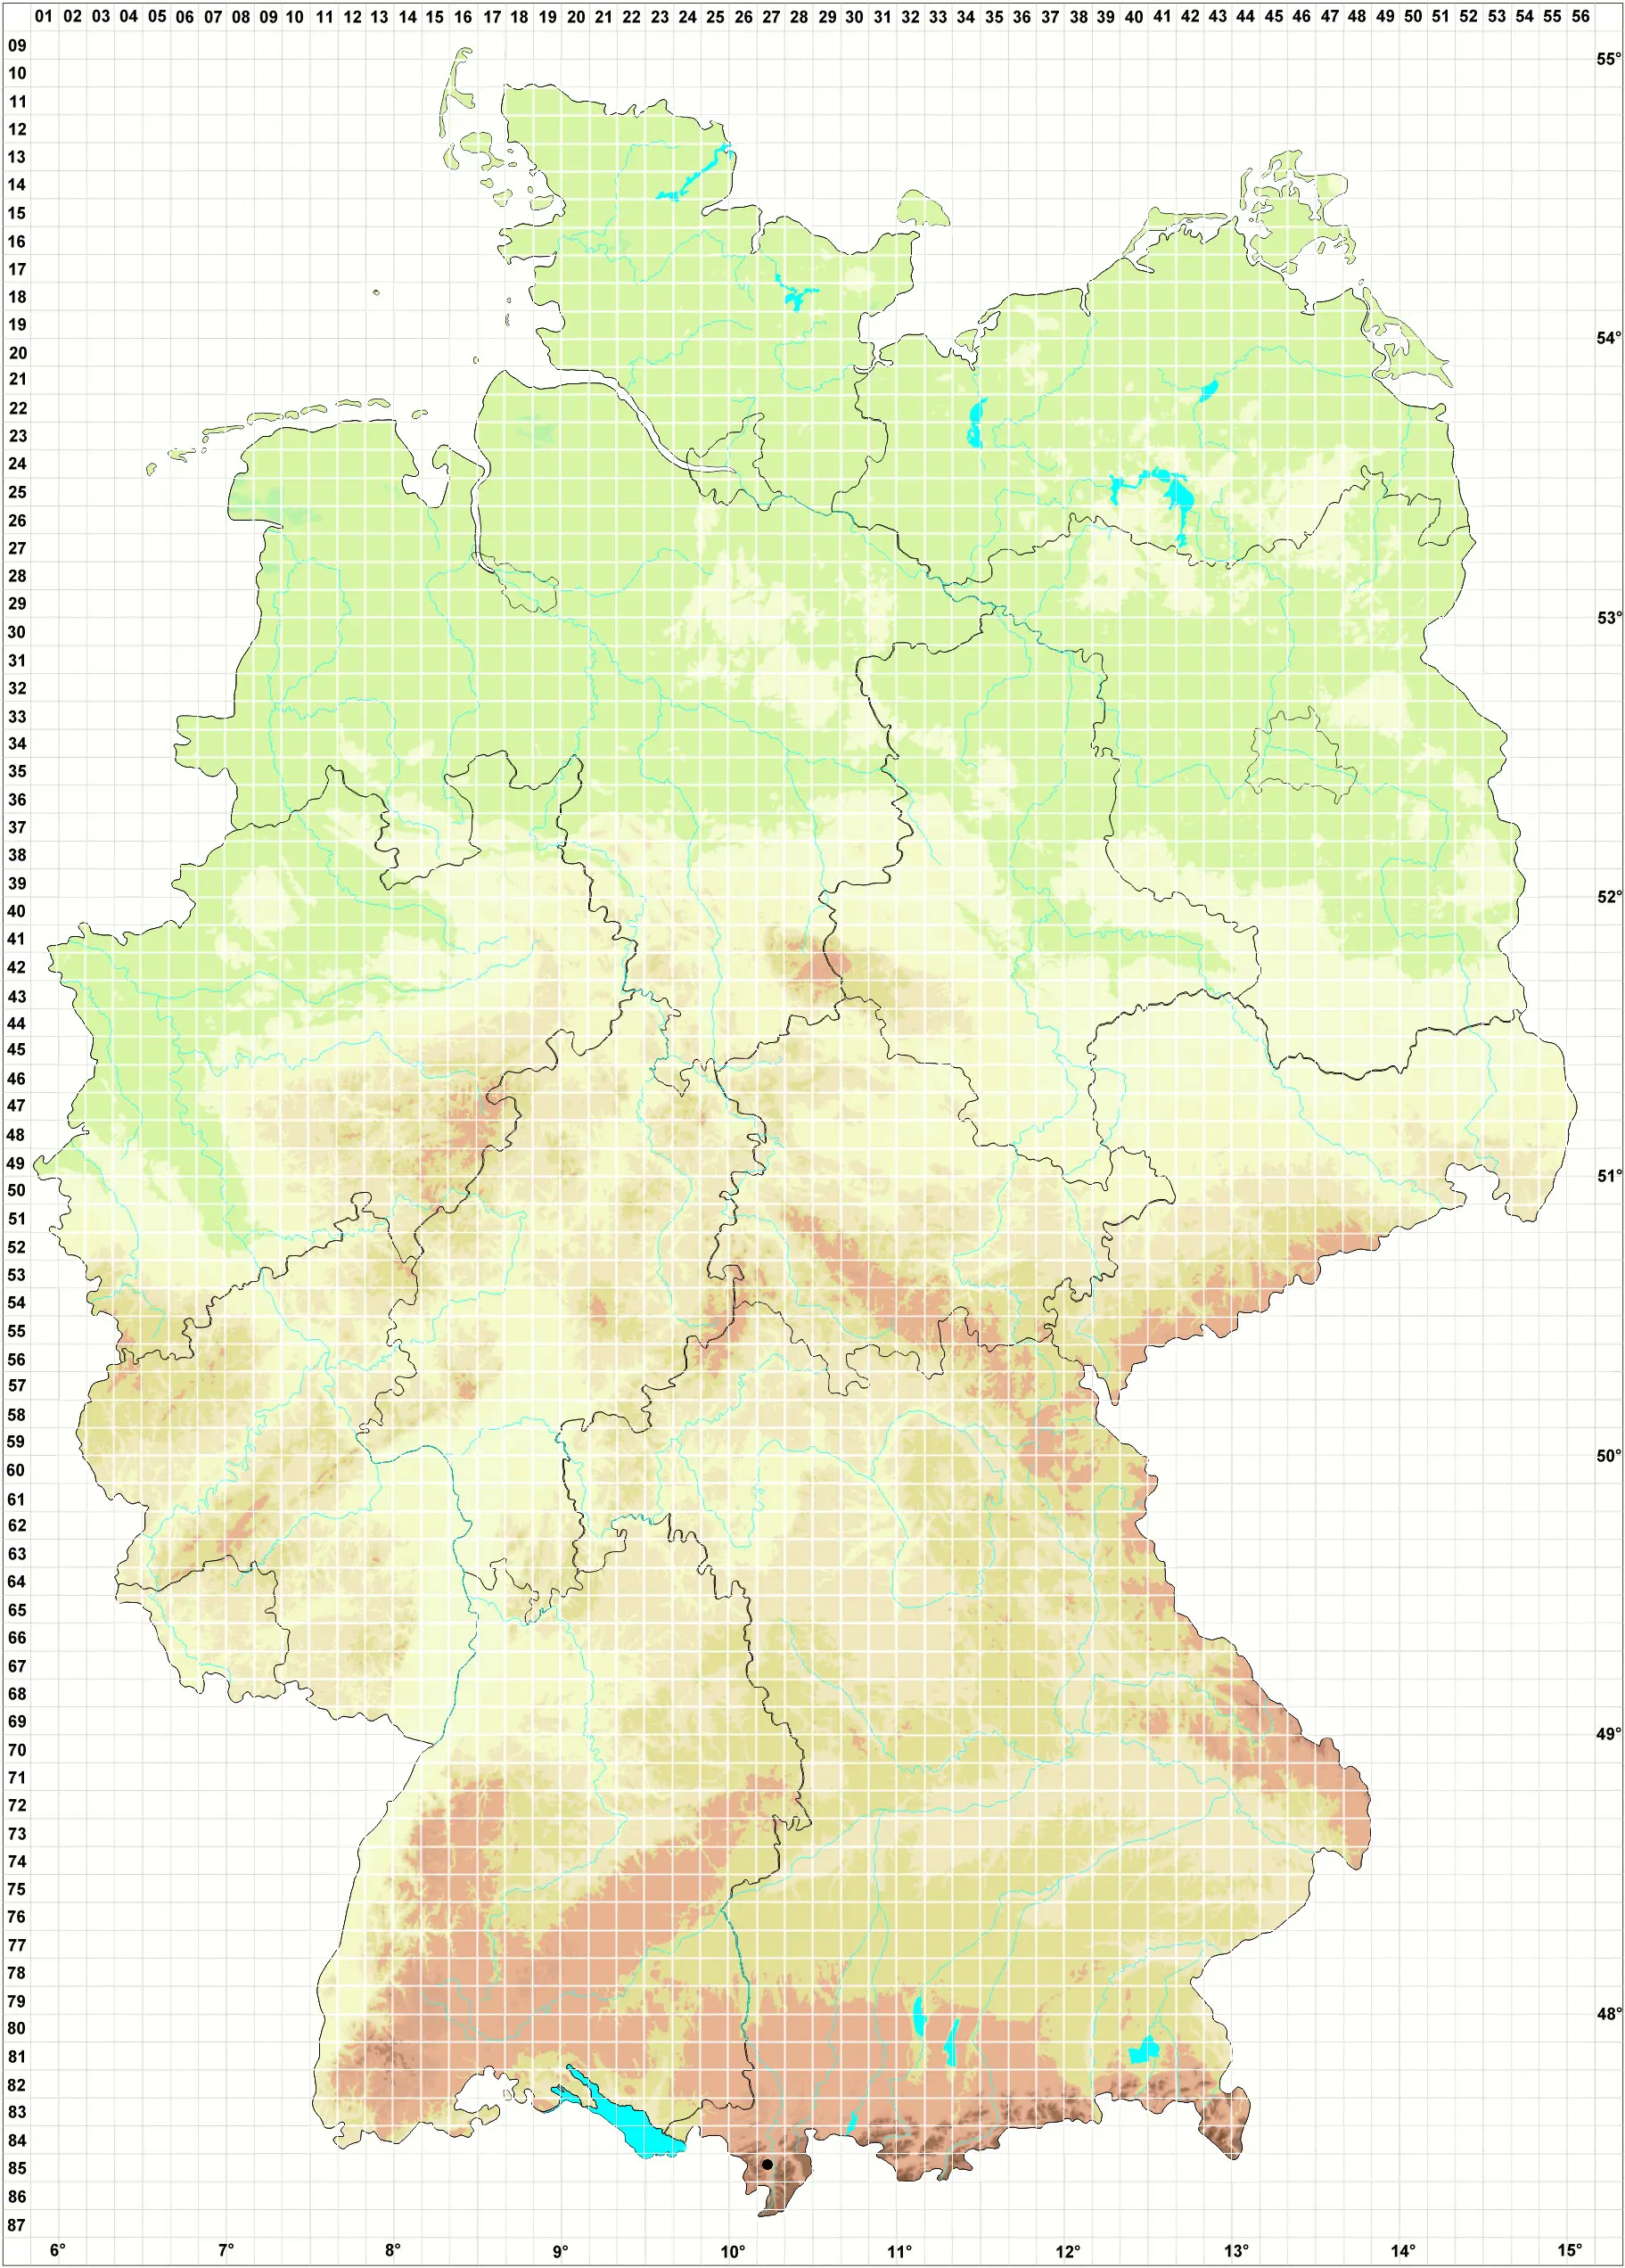 Karte P. Rittmann & S. Werth 01.11.2008